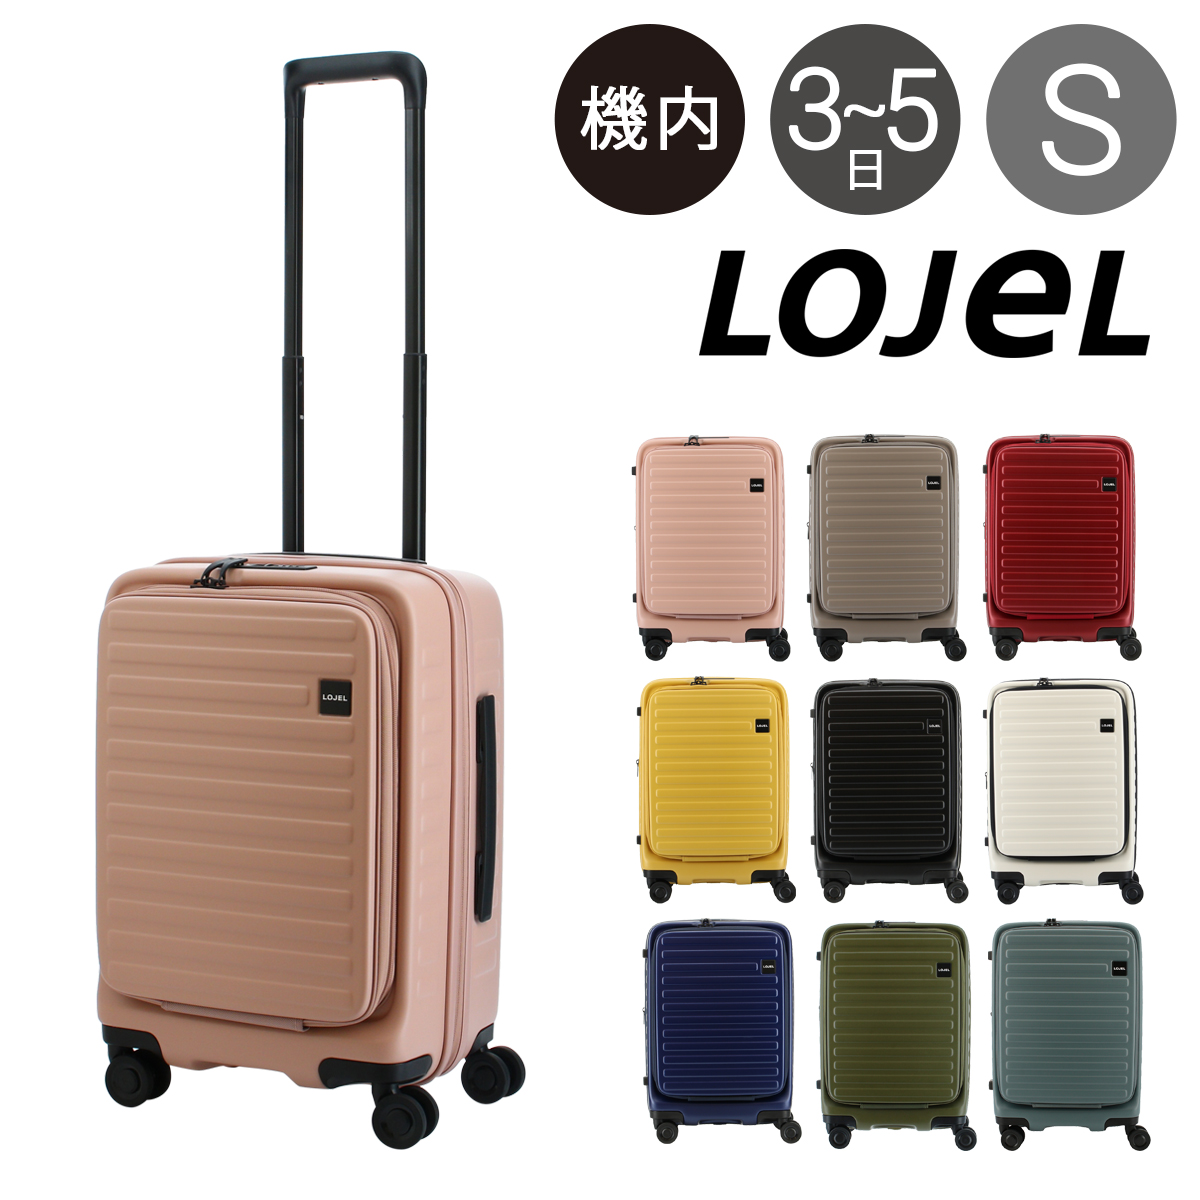 ロジェール LOJEL スーツケース CUBO-S 50.5cm <br>キャリーケース キャリーバッグ ビジネスキャリー 機内持ち込み可能 拡張機能 エキスパンダブル TSAロック搭載[即日発送]